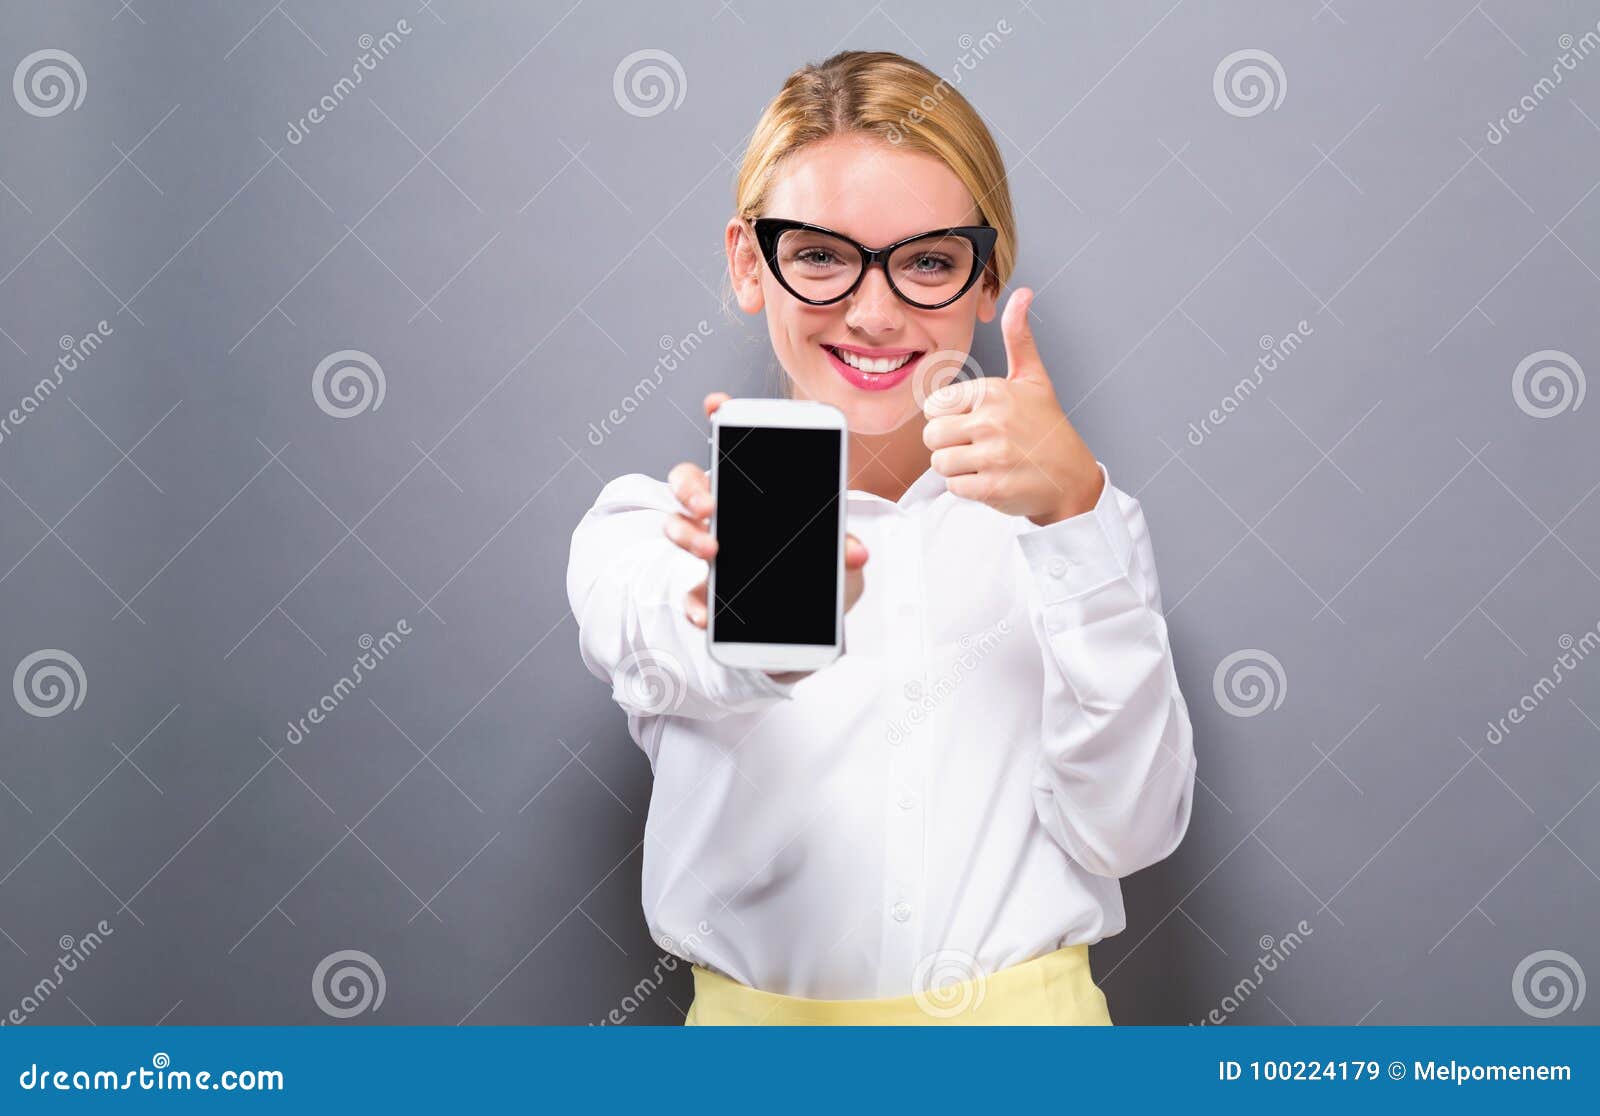 Junge Frau, die heraus ein Mobiltelefon hält